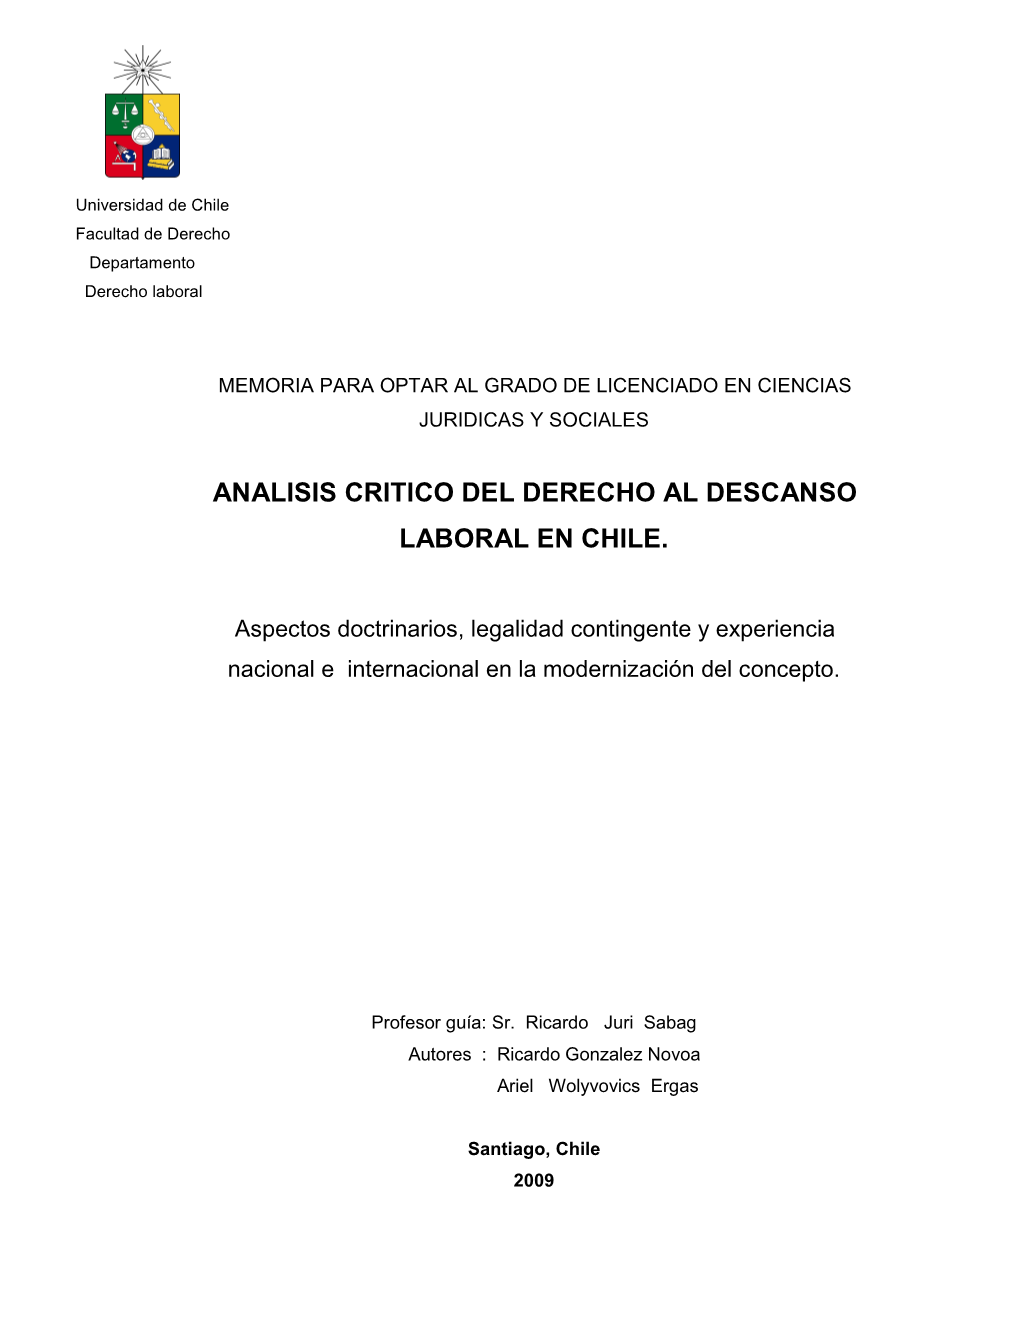 Analisis Critico Del Derecho Al Descanso Laboral En Chile